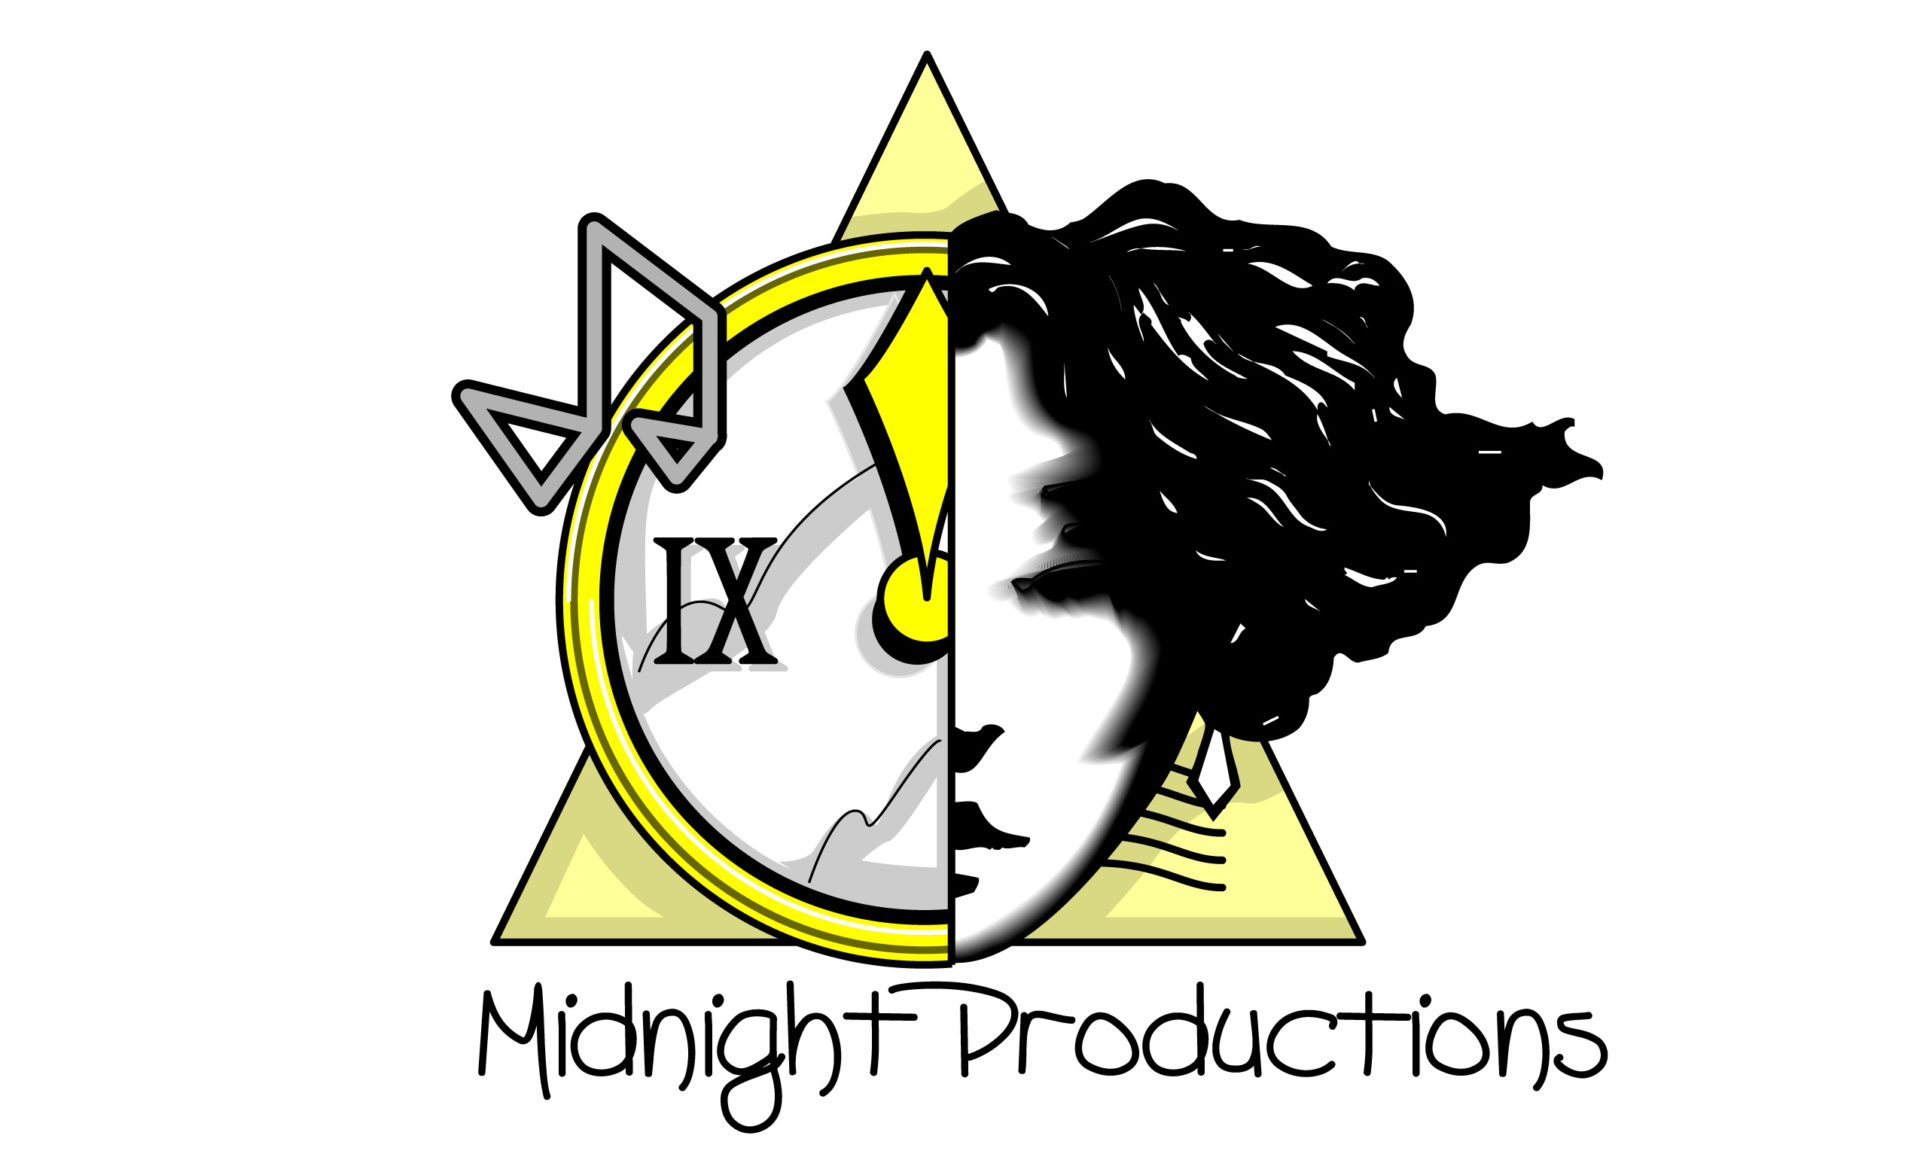 Progettazione Logotipo Midnight Productions | Studiovagnetti